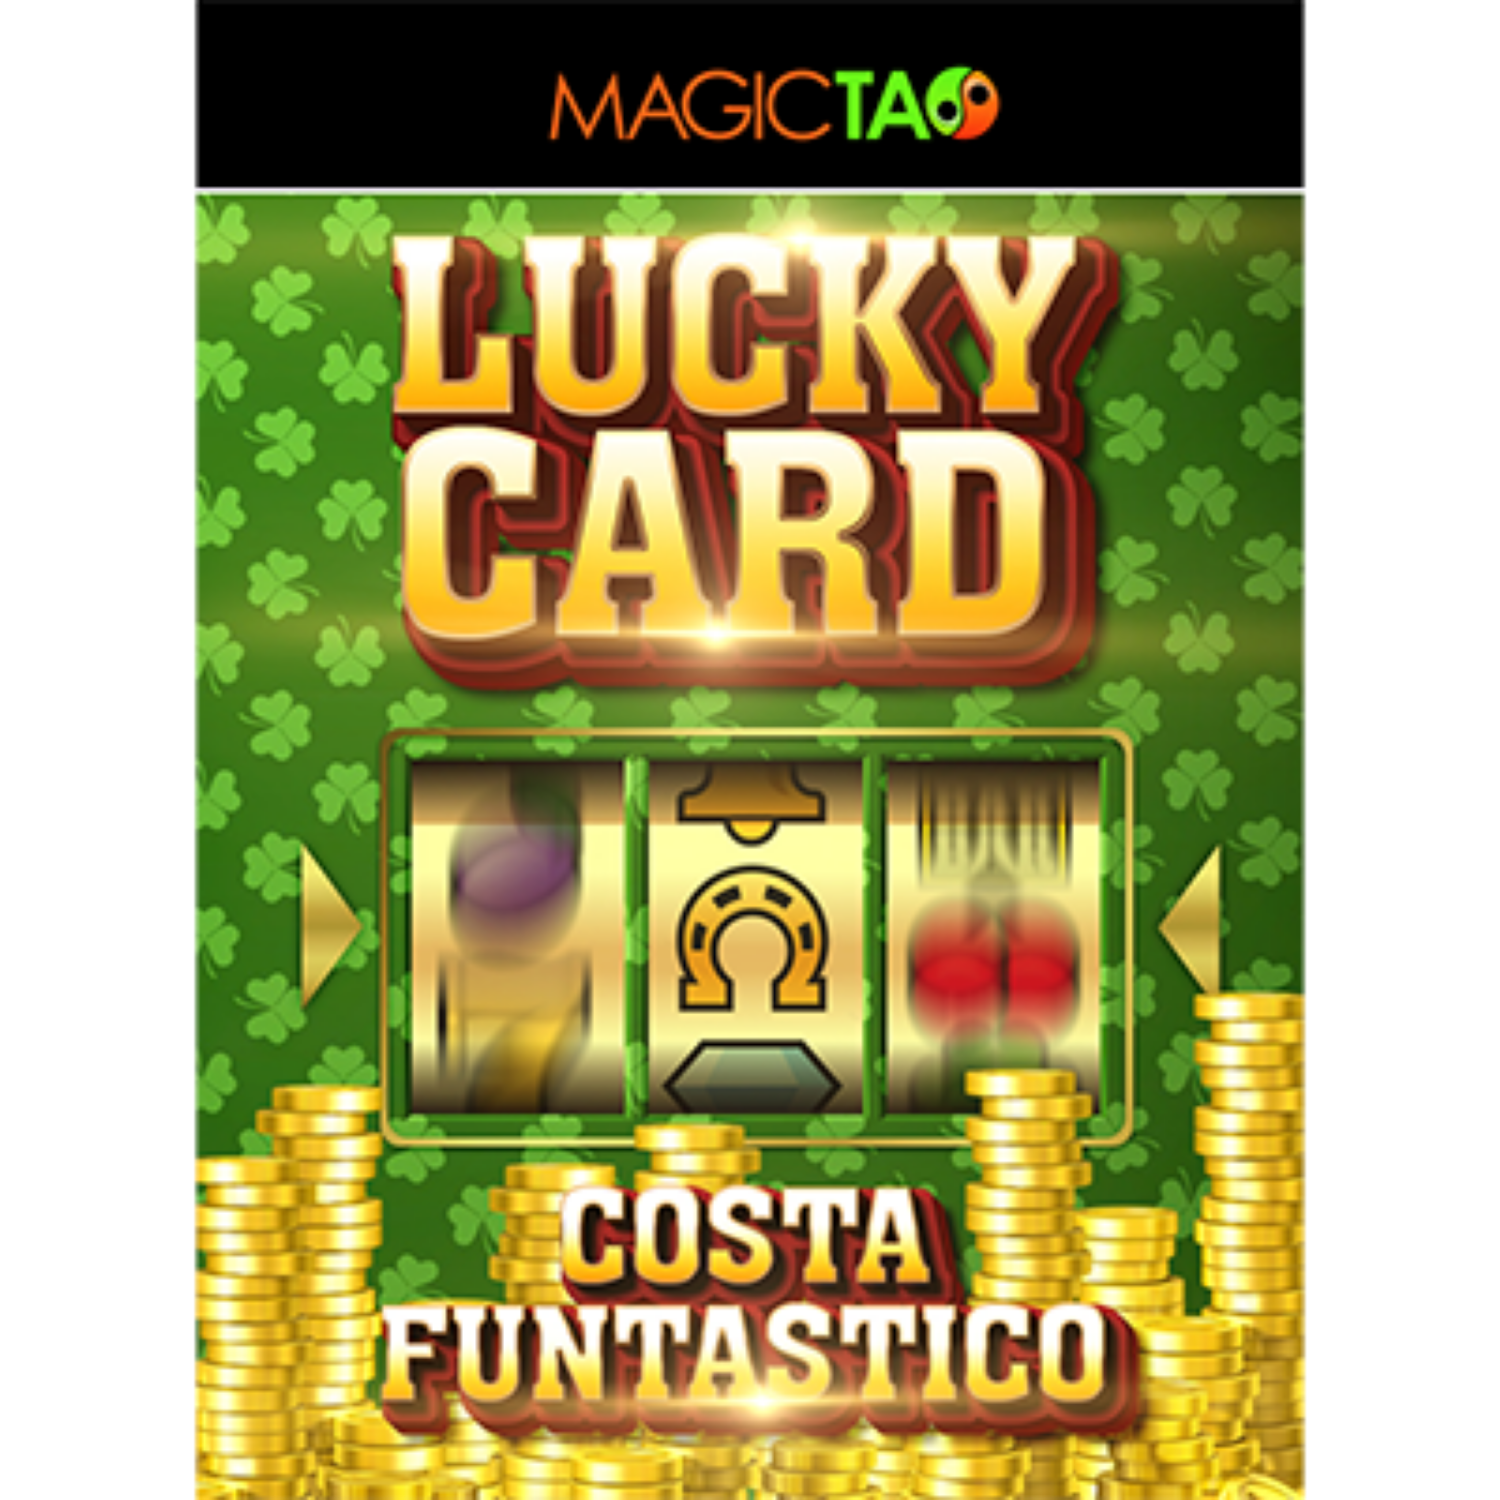 [럭키카드]Lucky Card Blue Gimmick and Online Instructions by Costa Funtastico